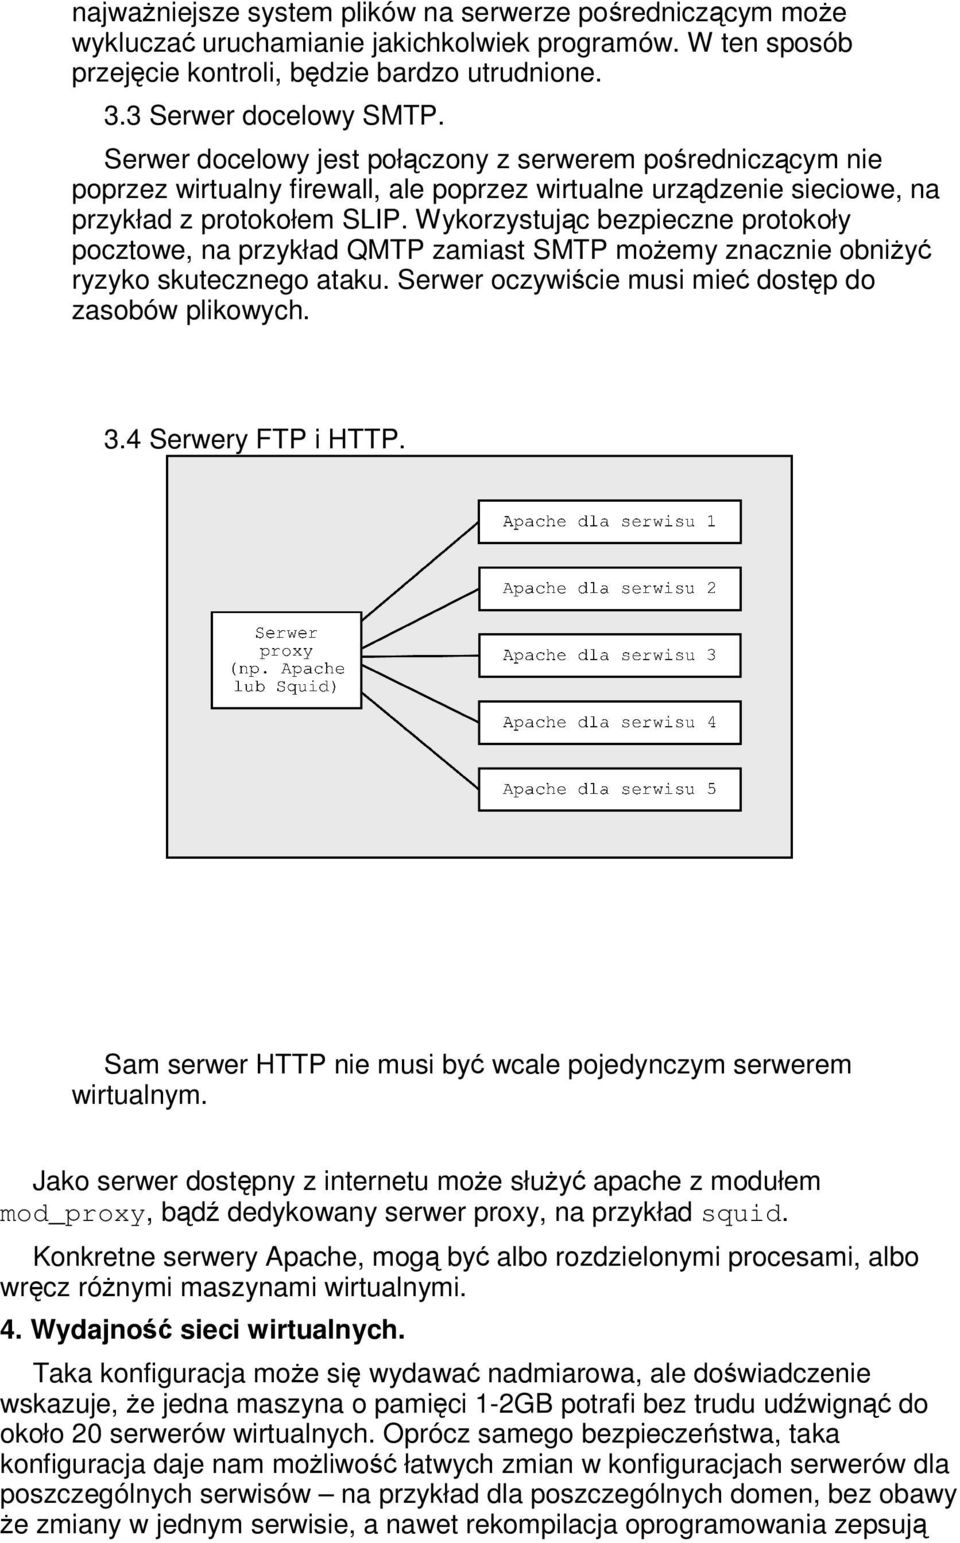 Wykorzystujc bezpieczne protokoły pocztowe, na przykład QMTP zamiast SMTP moemy znacznie obniy ryzyko skutecznego ataku. Serwer oczywicie musi mie dostp do zasobów plikowych. 3.4 Serwery FTP i HTTP.